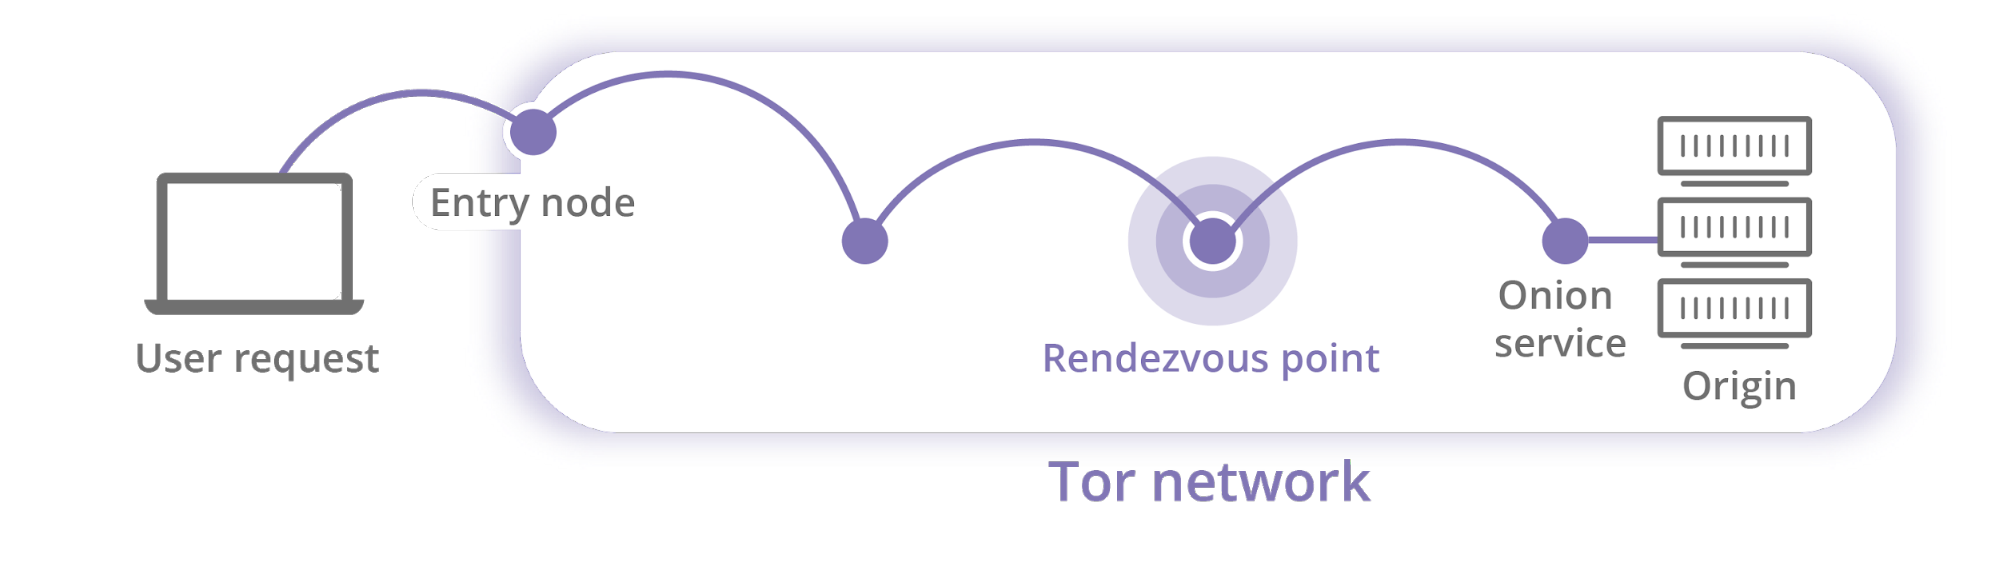 टो नेटवर्क उदाहरण (क्लाउडफ़ेयर ब्लॉग)